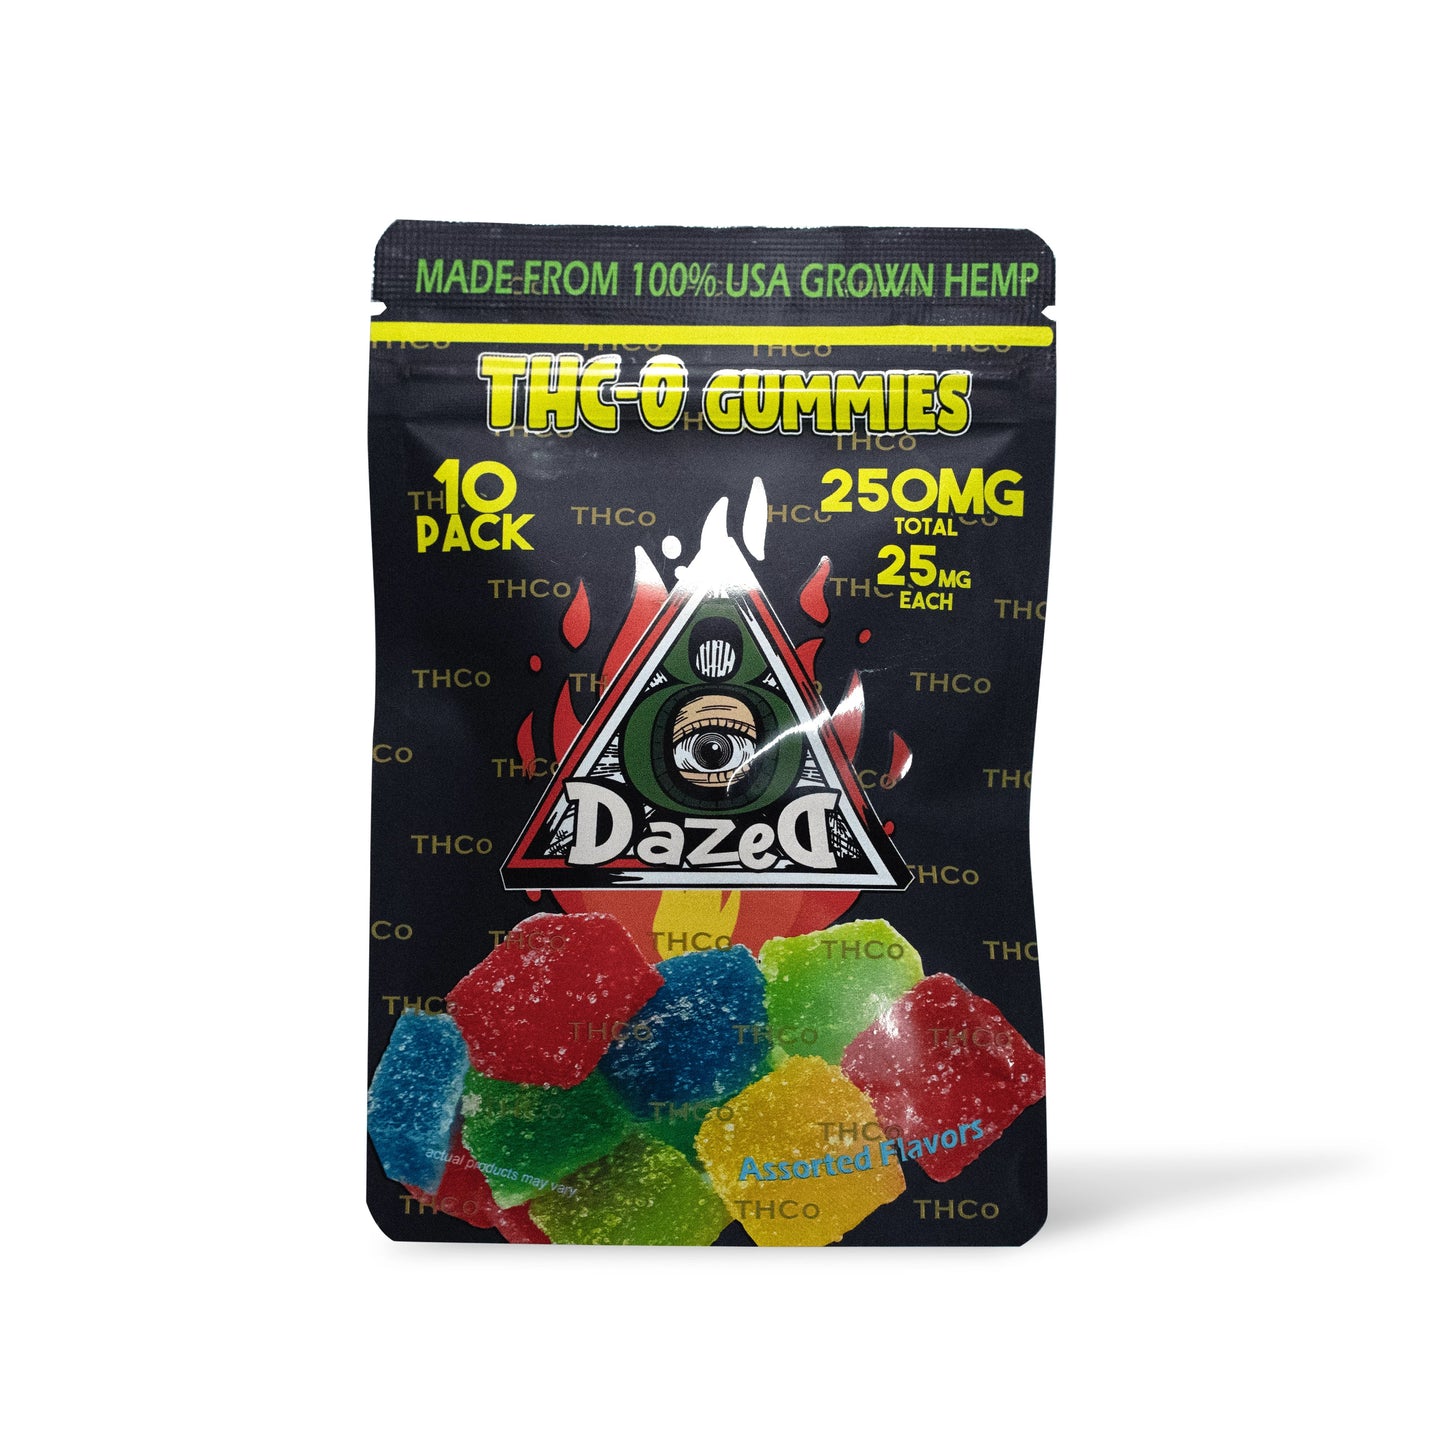 DazeD8 Delta 8 THC-O Gummies – 10pc (25mg) Best Sales Price - Gummies